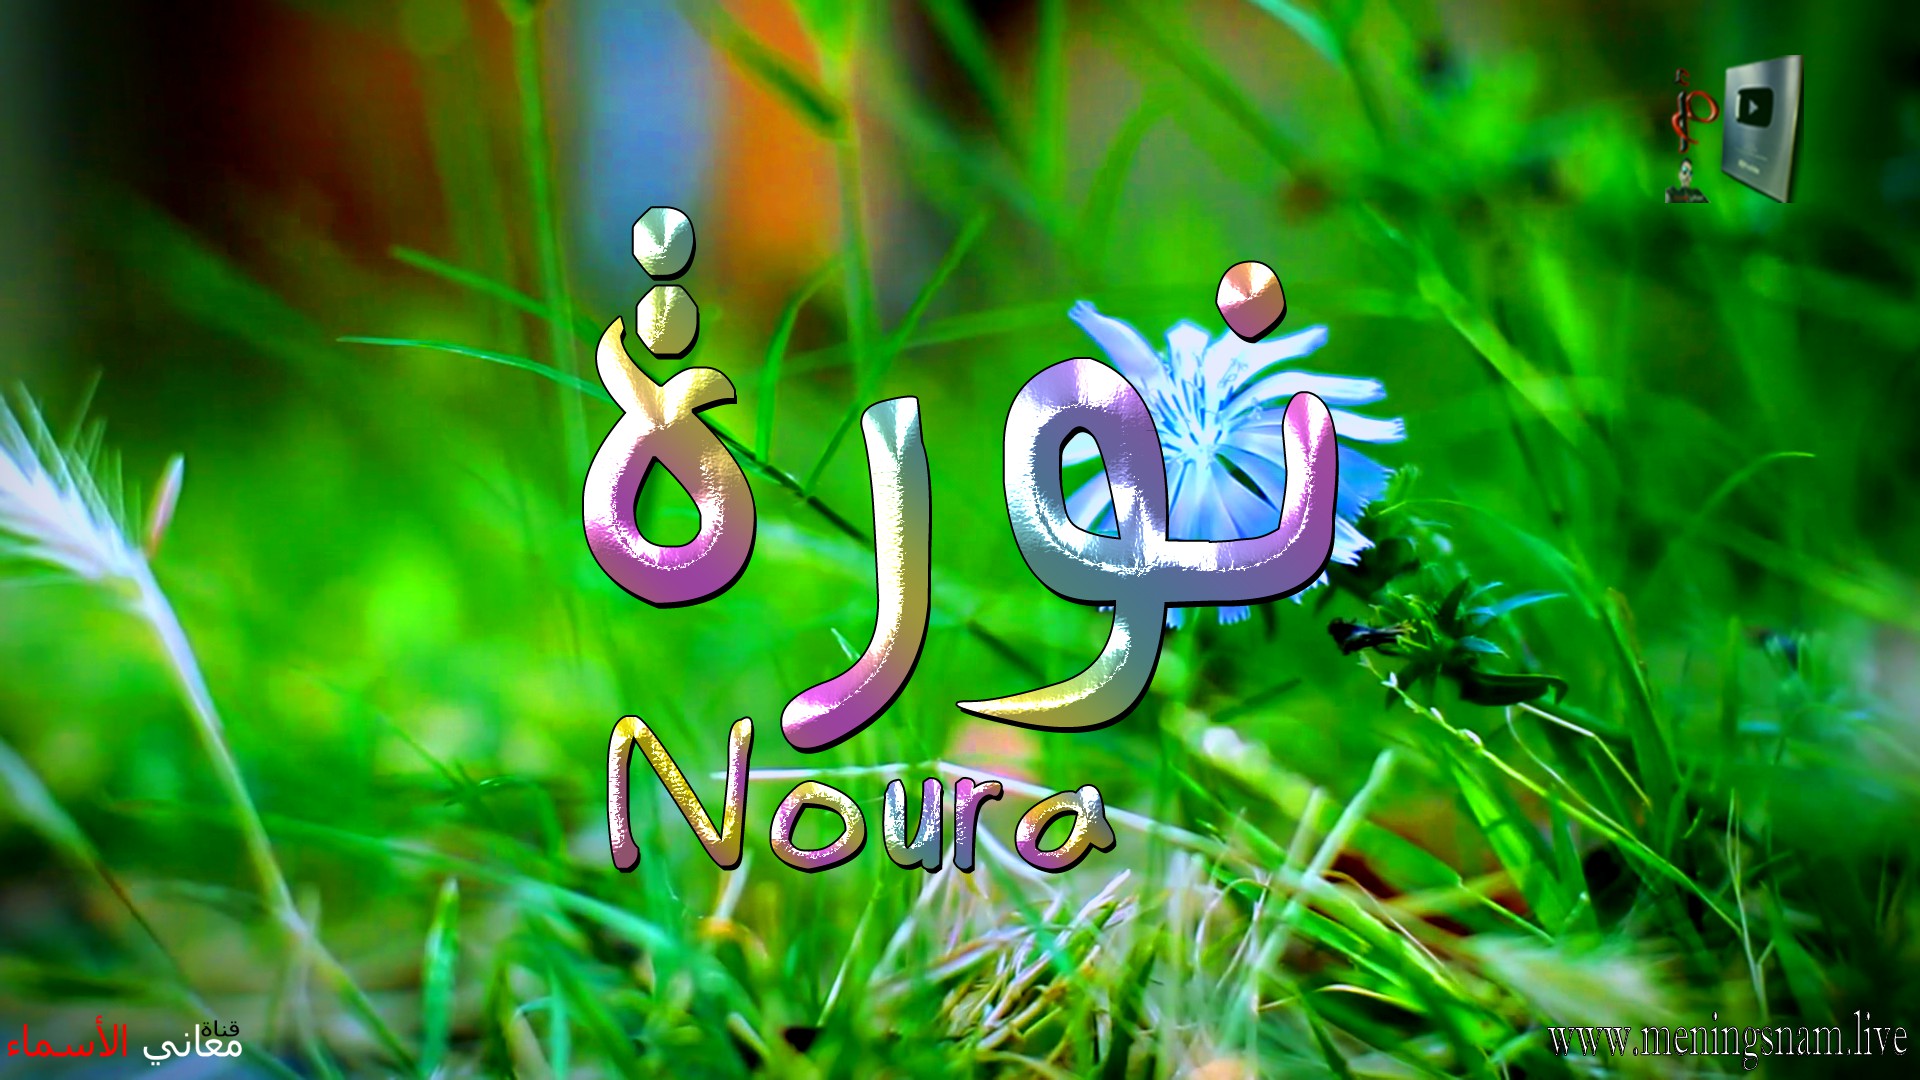 معنى اسم, نورة, وصفات, حاملة, هذا الاسم, Noura,